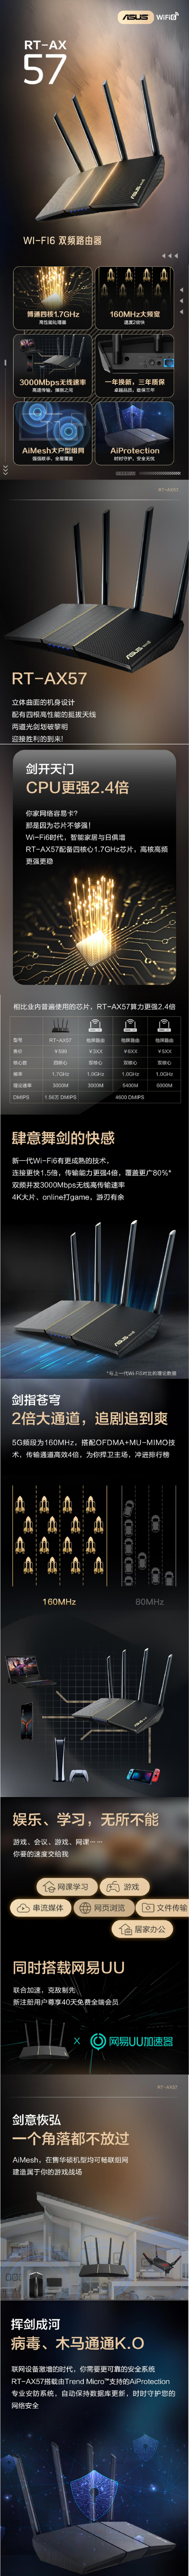 華碩 ASUS (RT-AX57) AX3000 Wi-Fi 6 雙頻路由器